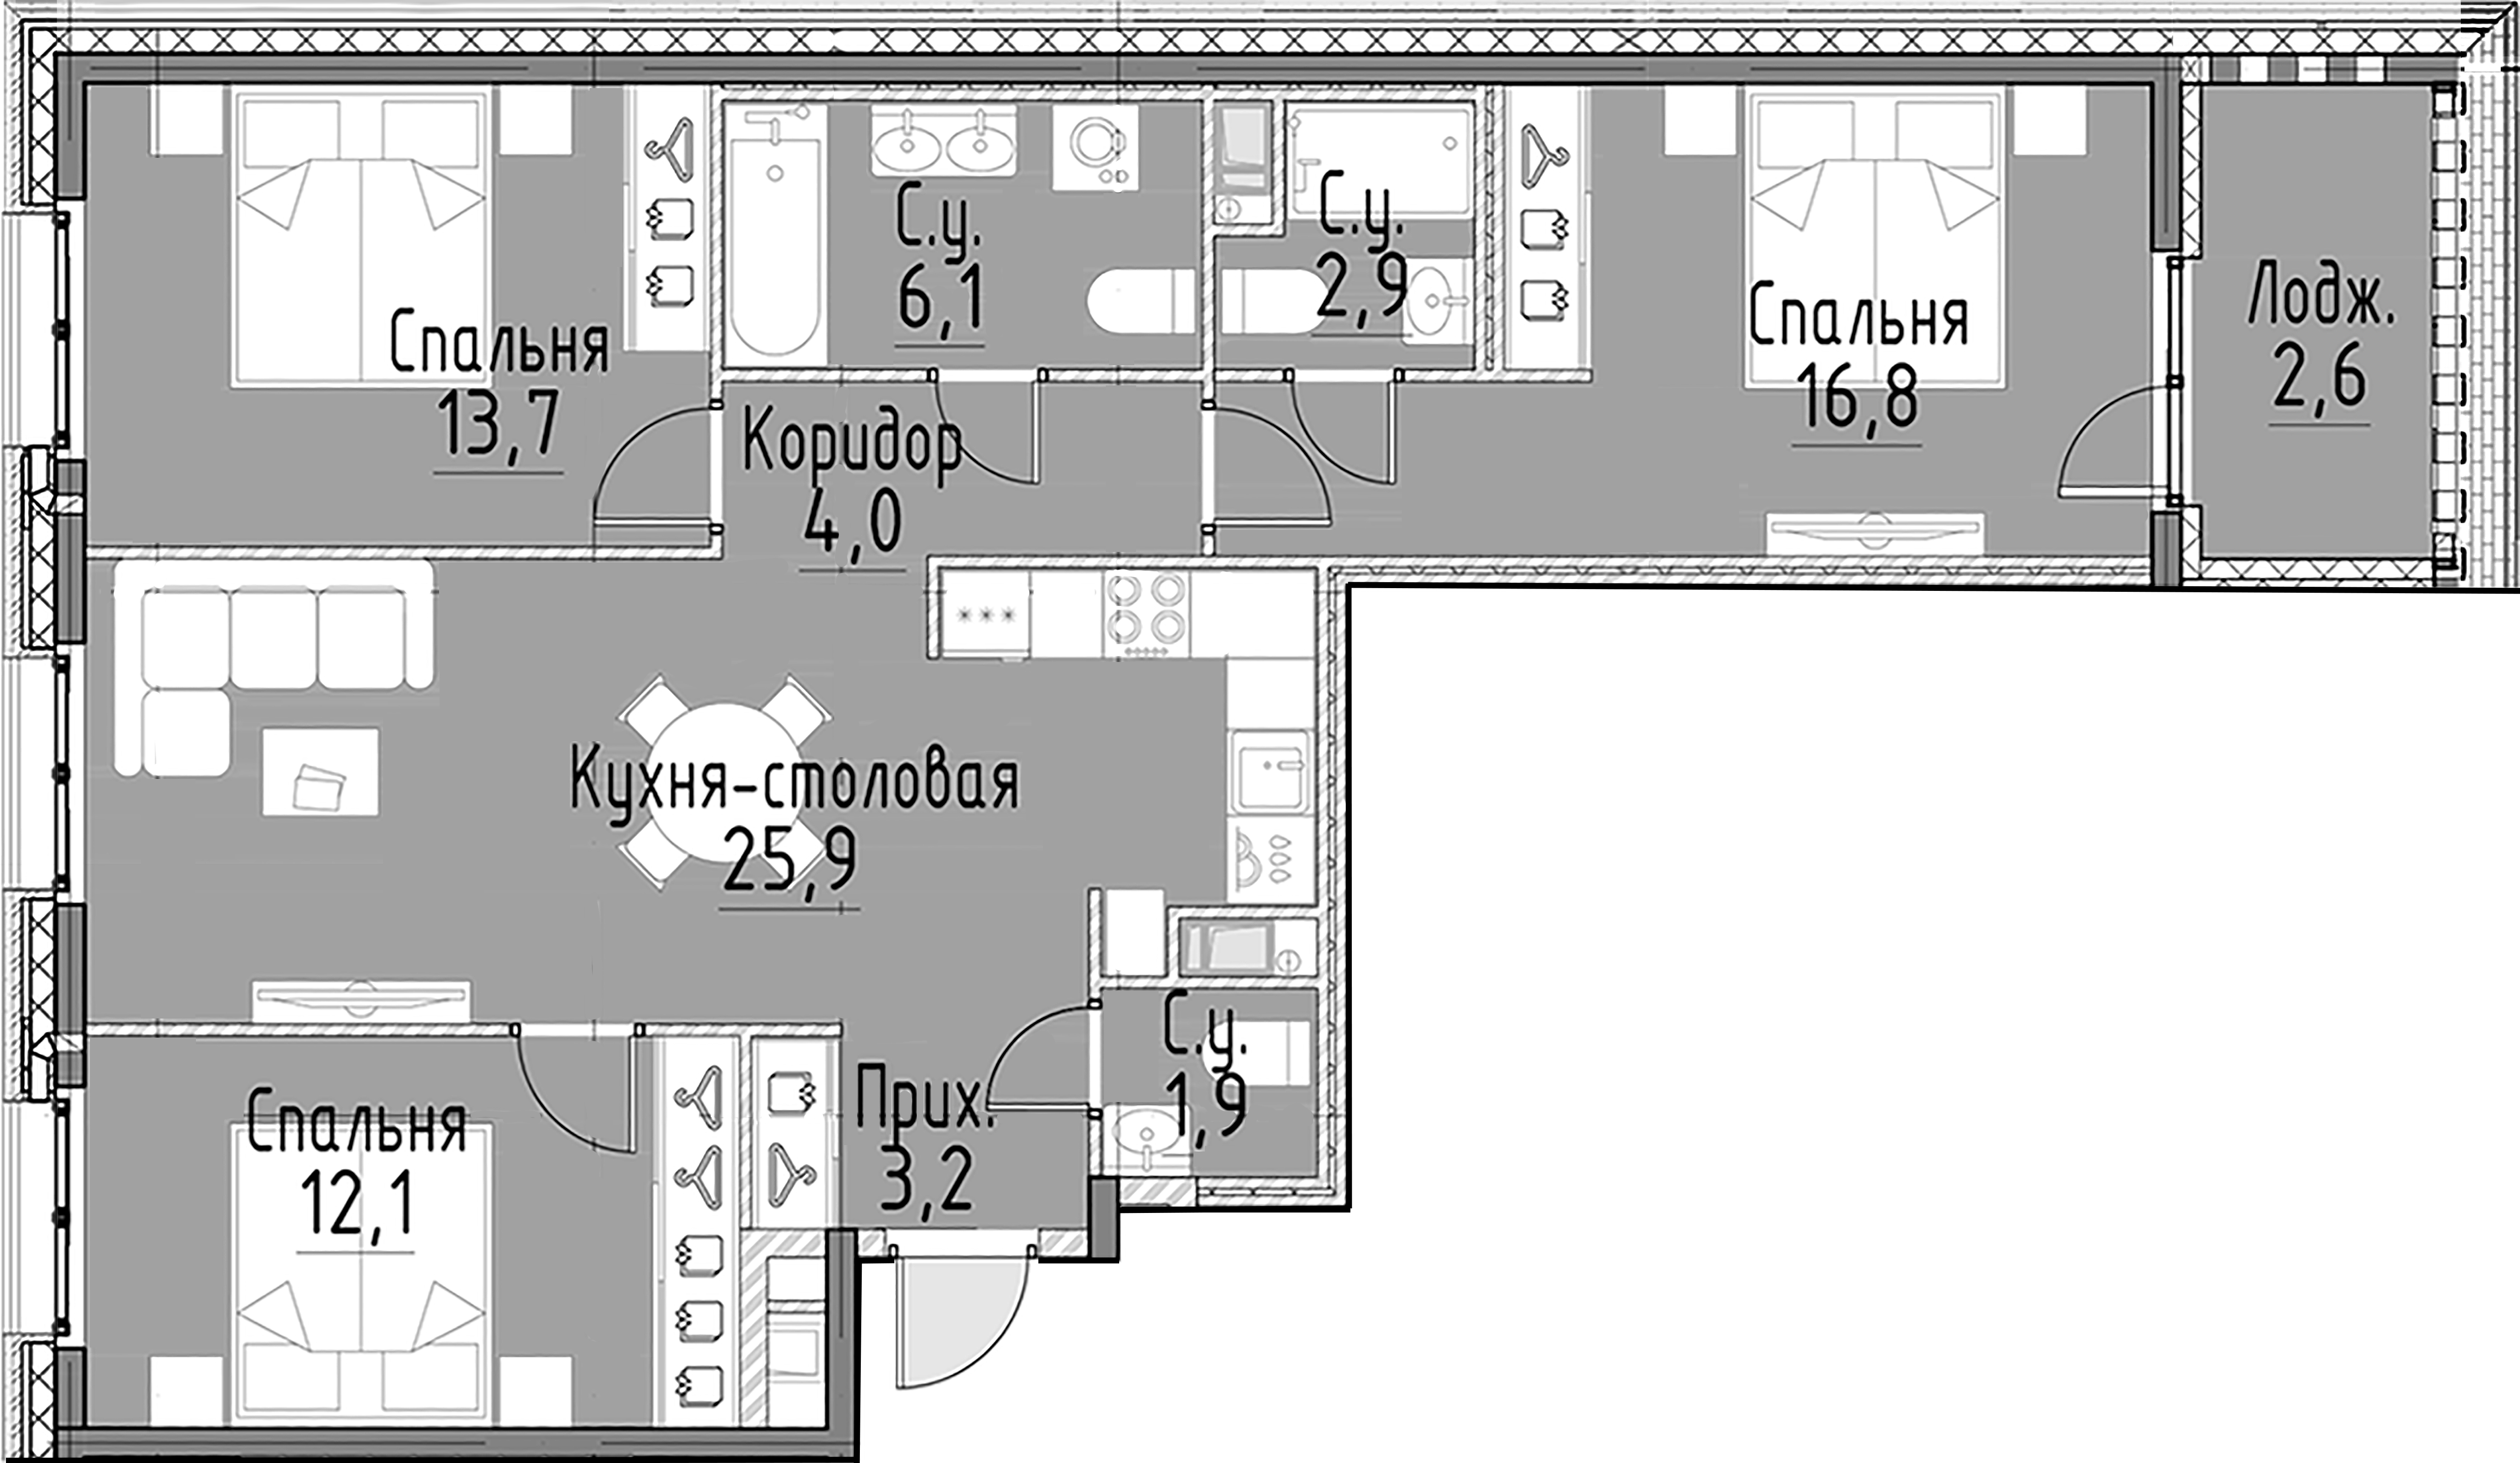 3-комнатная квартира  №114 в Моисеенко, 10: 86.6 м², этаж 5 - купить в Санкт-Петербурге